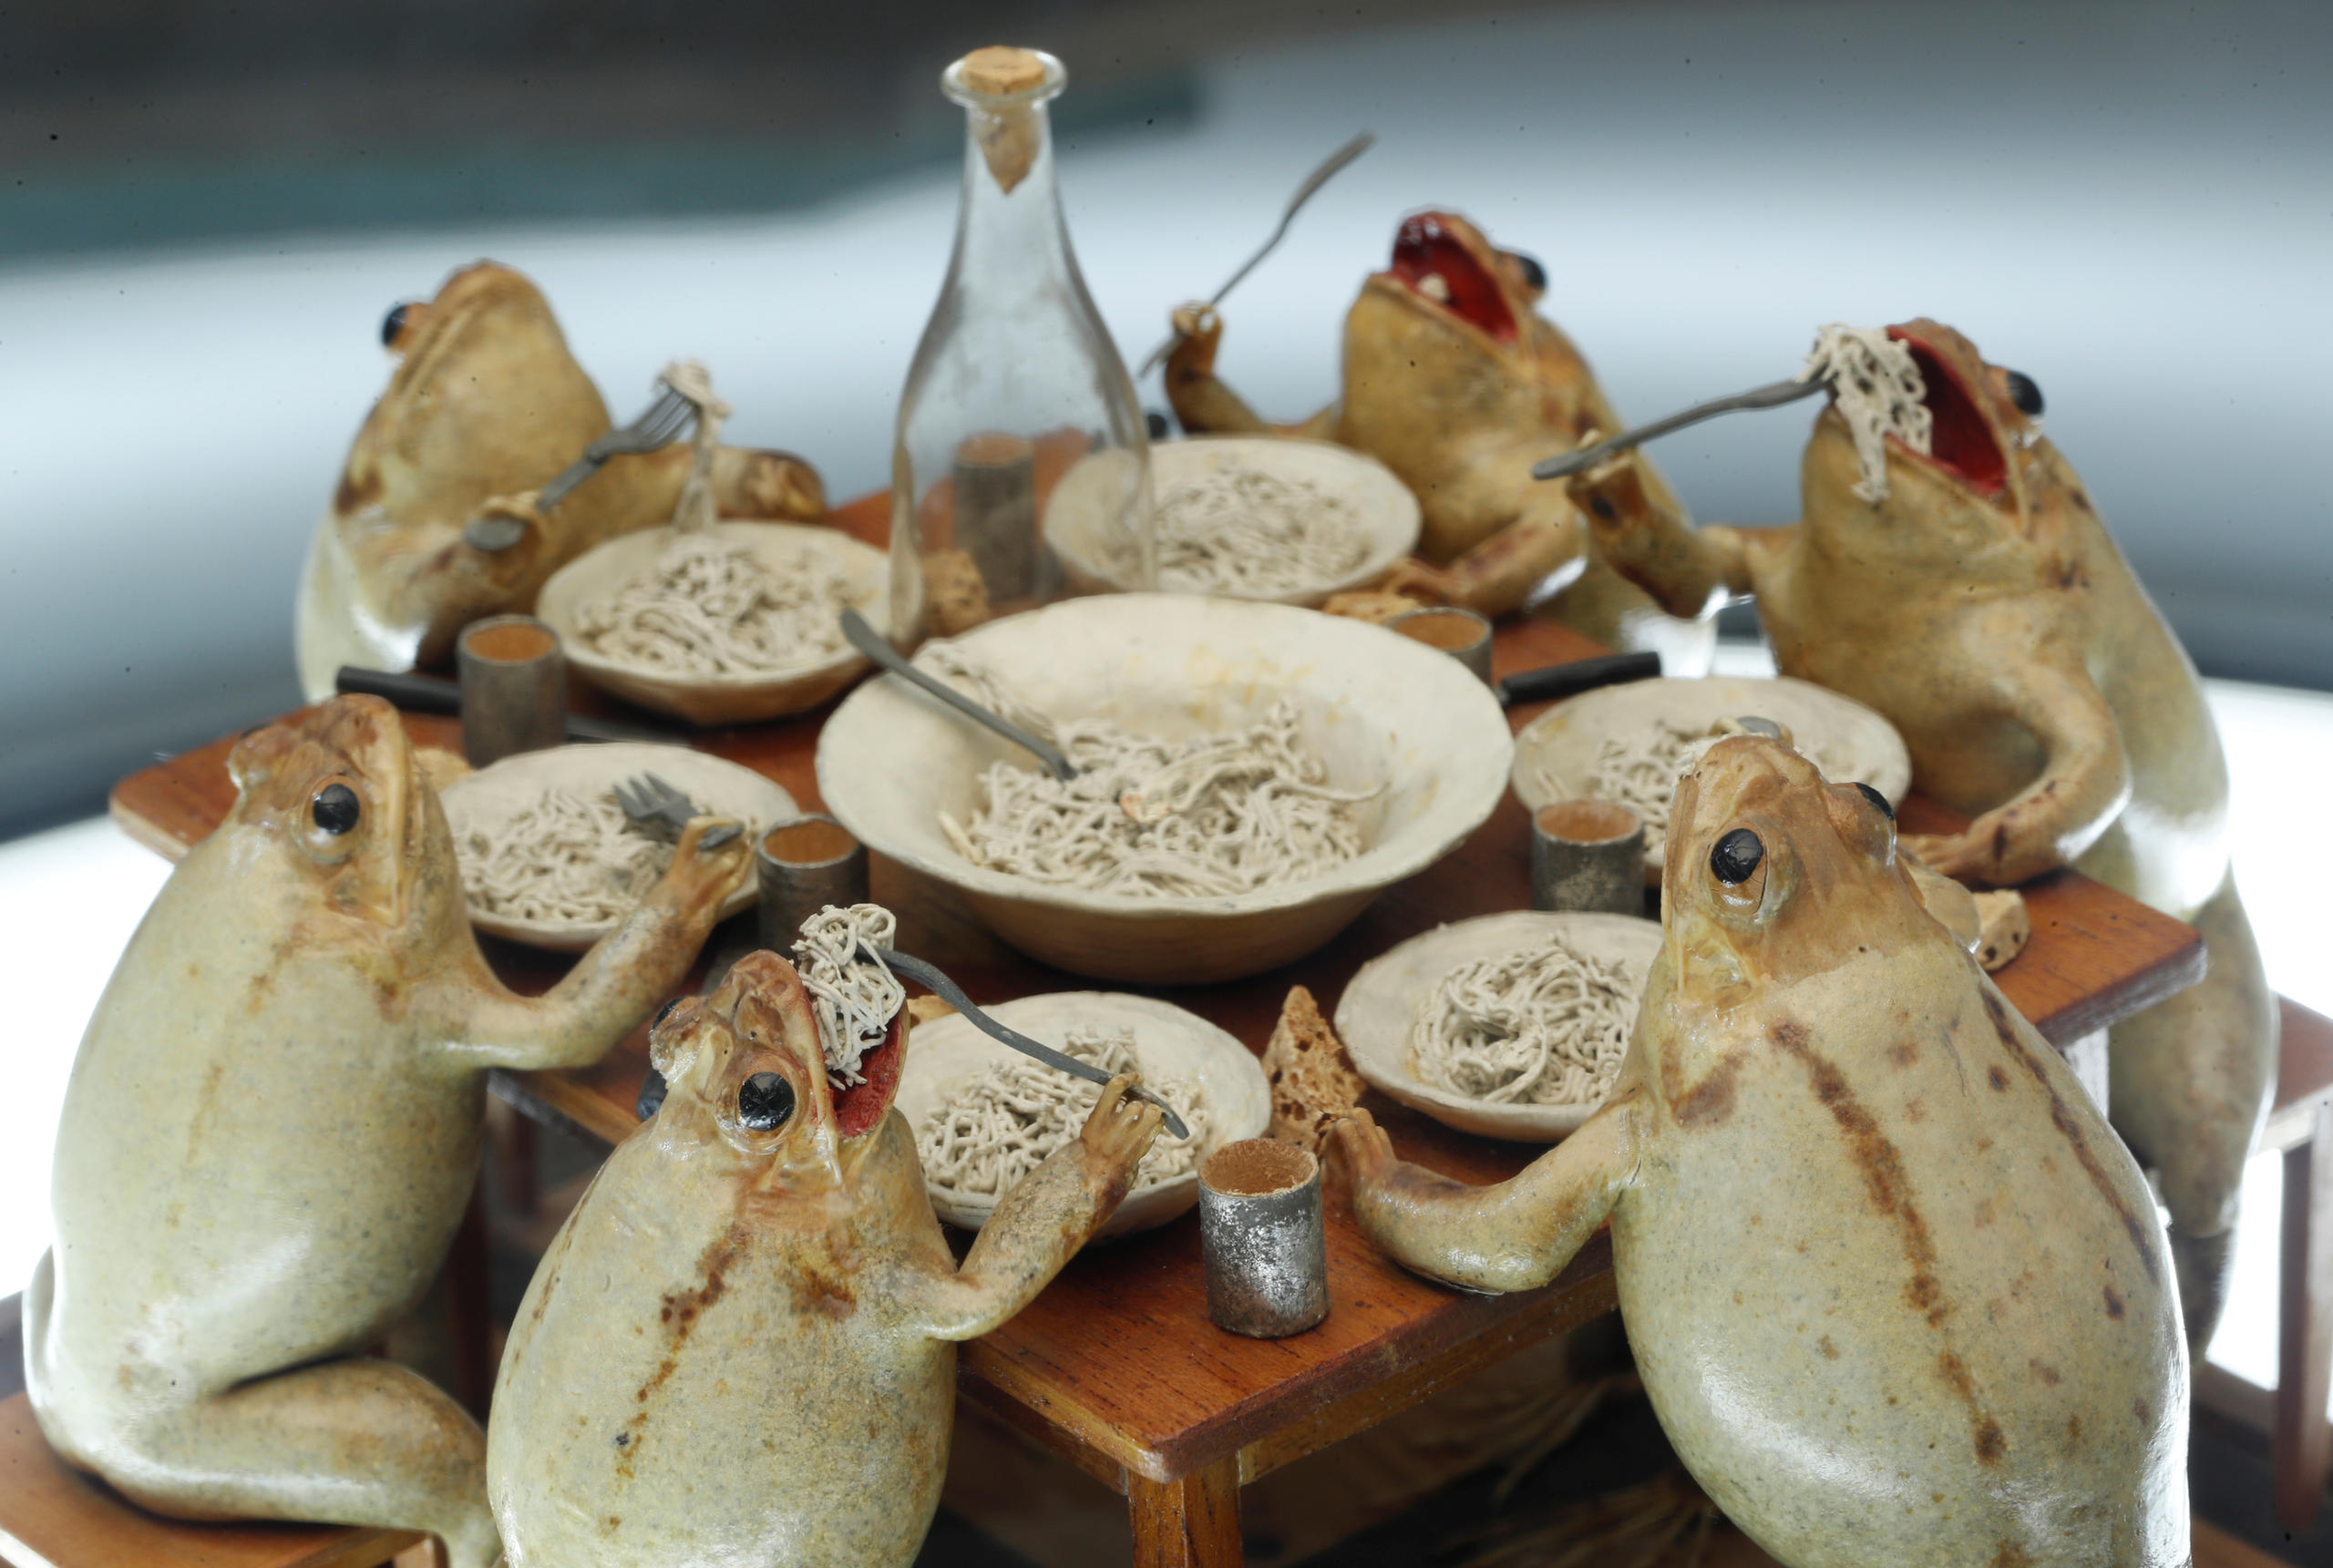 En la foto se ven seis ranas disecadas en una mesa comiendo como seres humanos